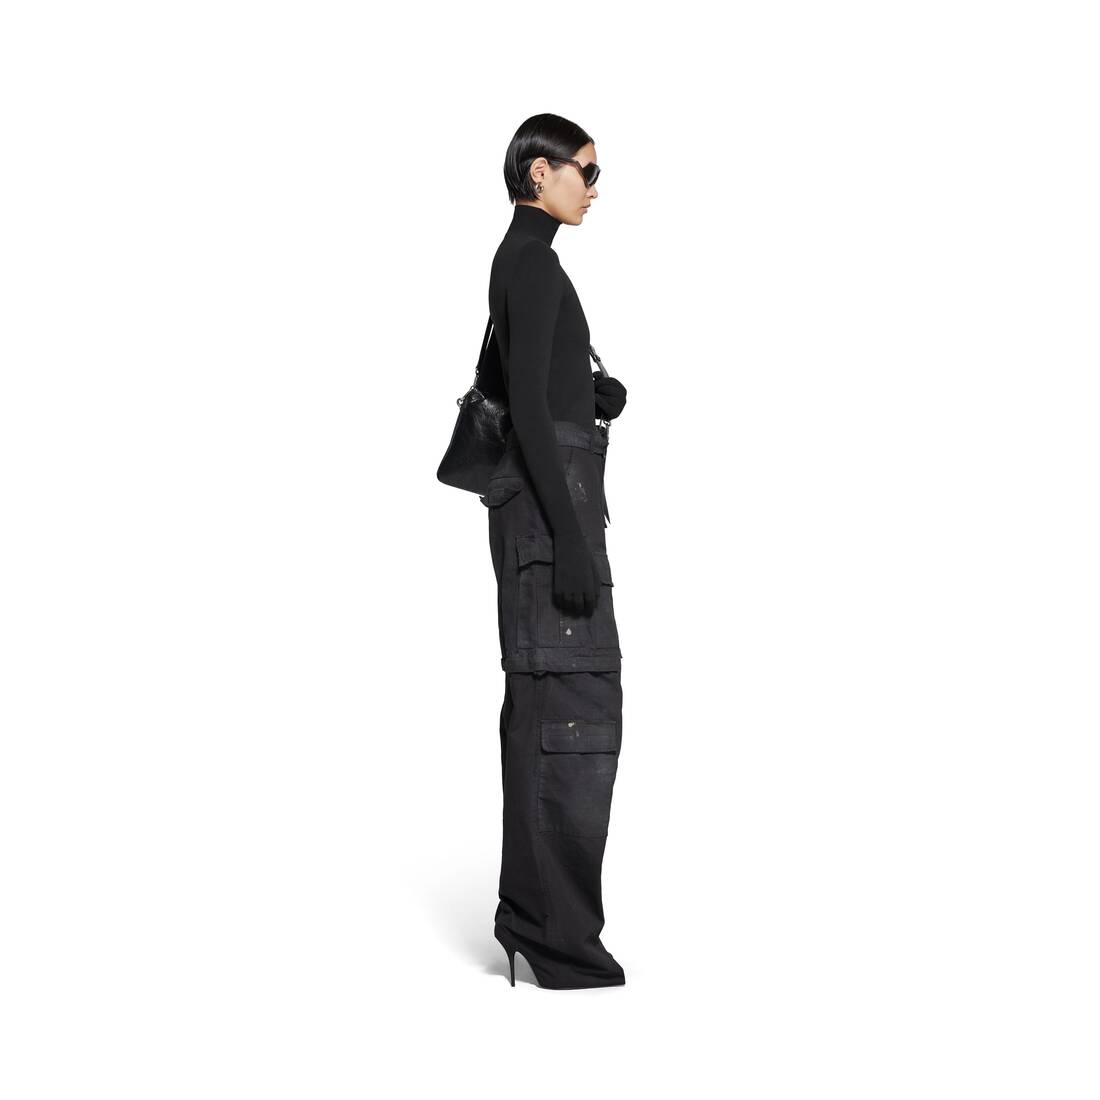 Women's Balenciaga Knife Cargo Pantashoes in Black | Balenciaga US